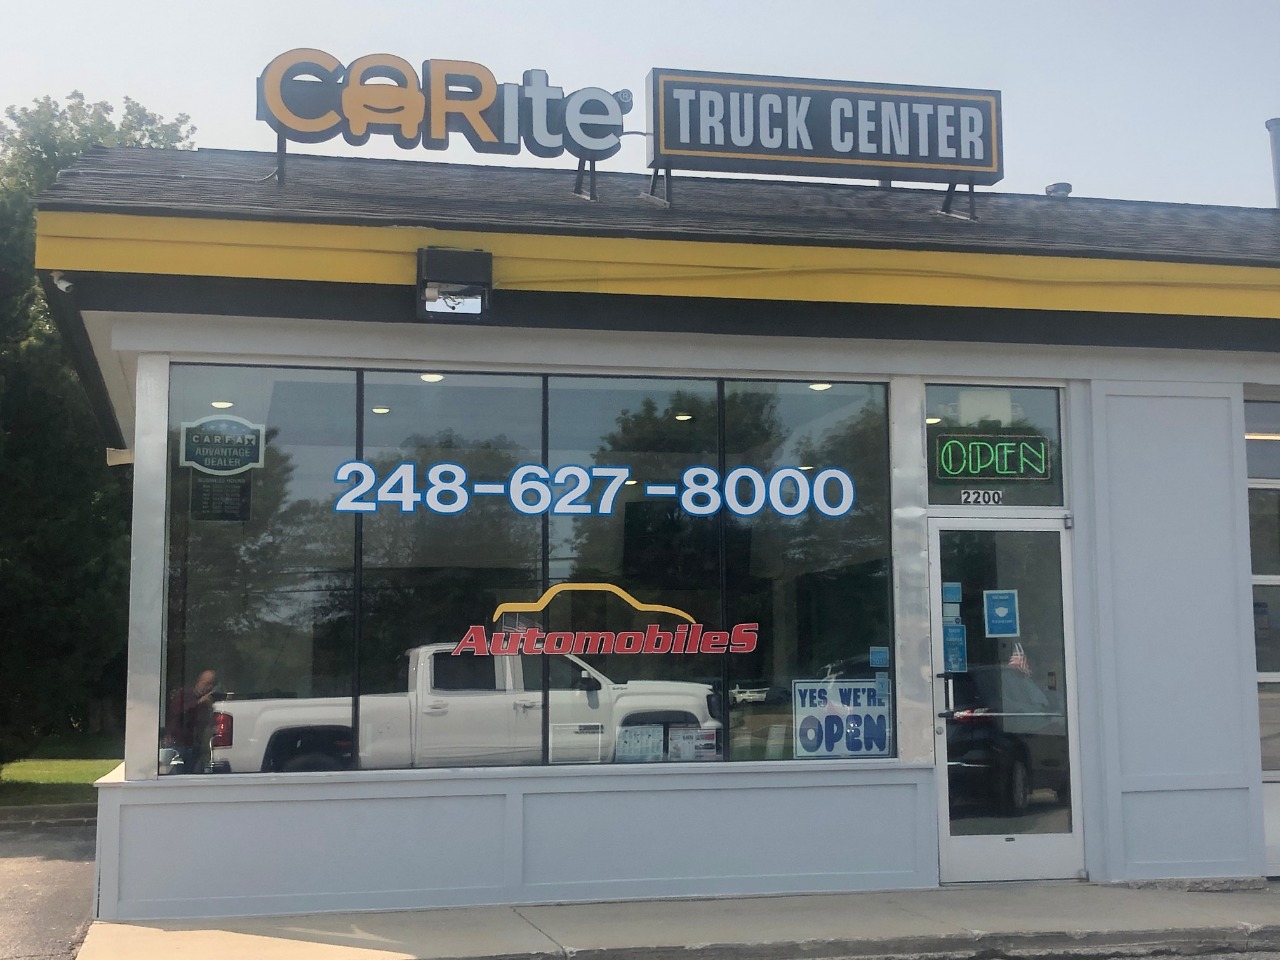 Carite Truck Center